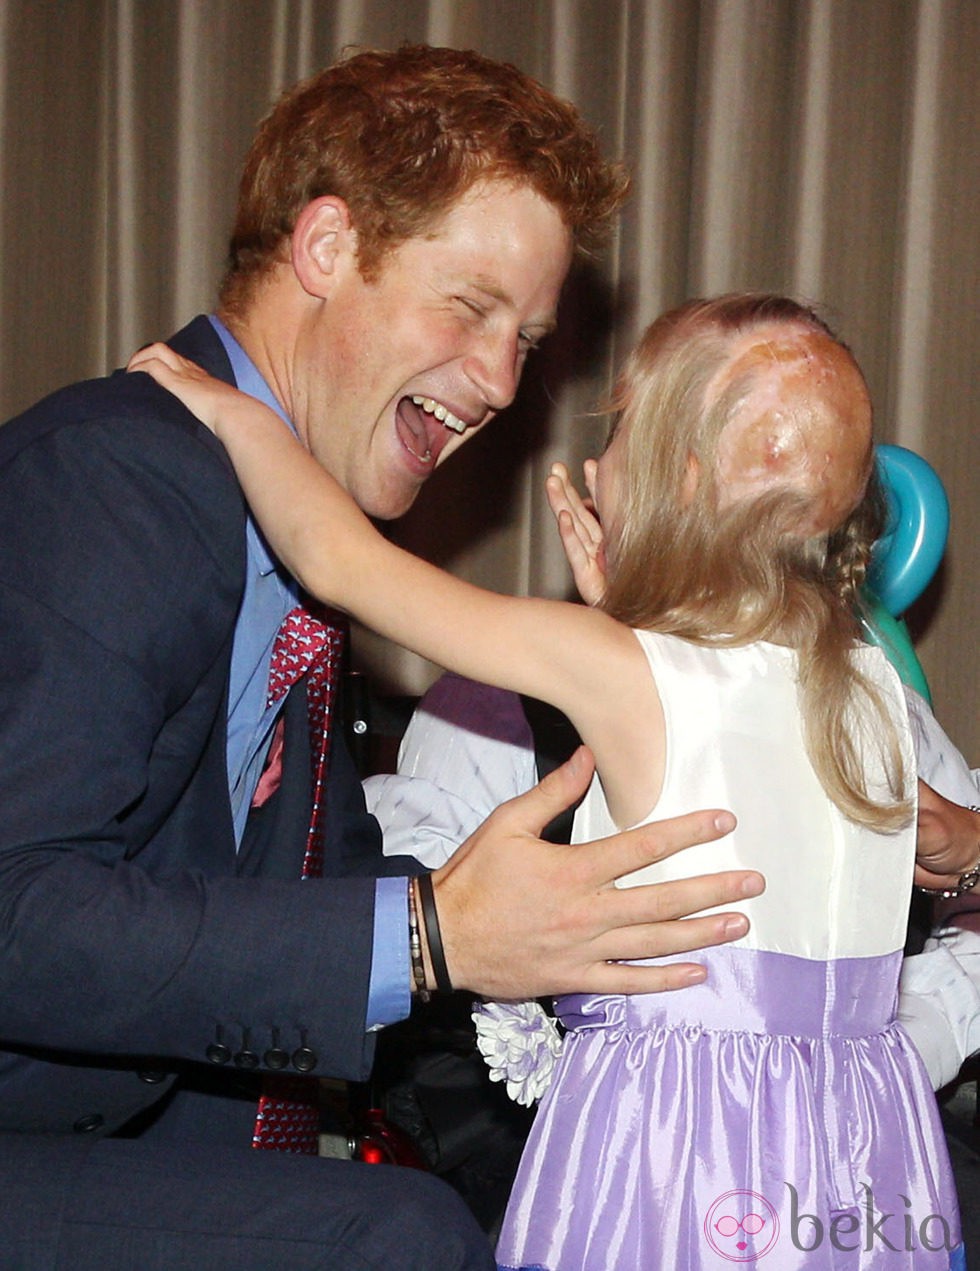 El Príncipe Harry abraza a una niña en los premios de la Fundación Wellchild